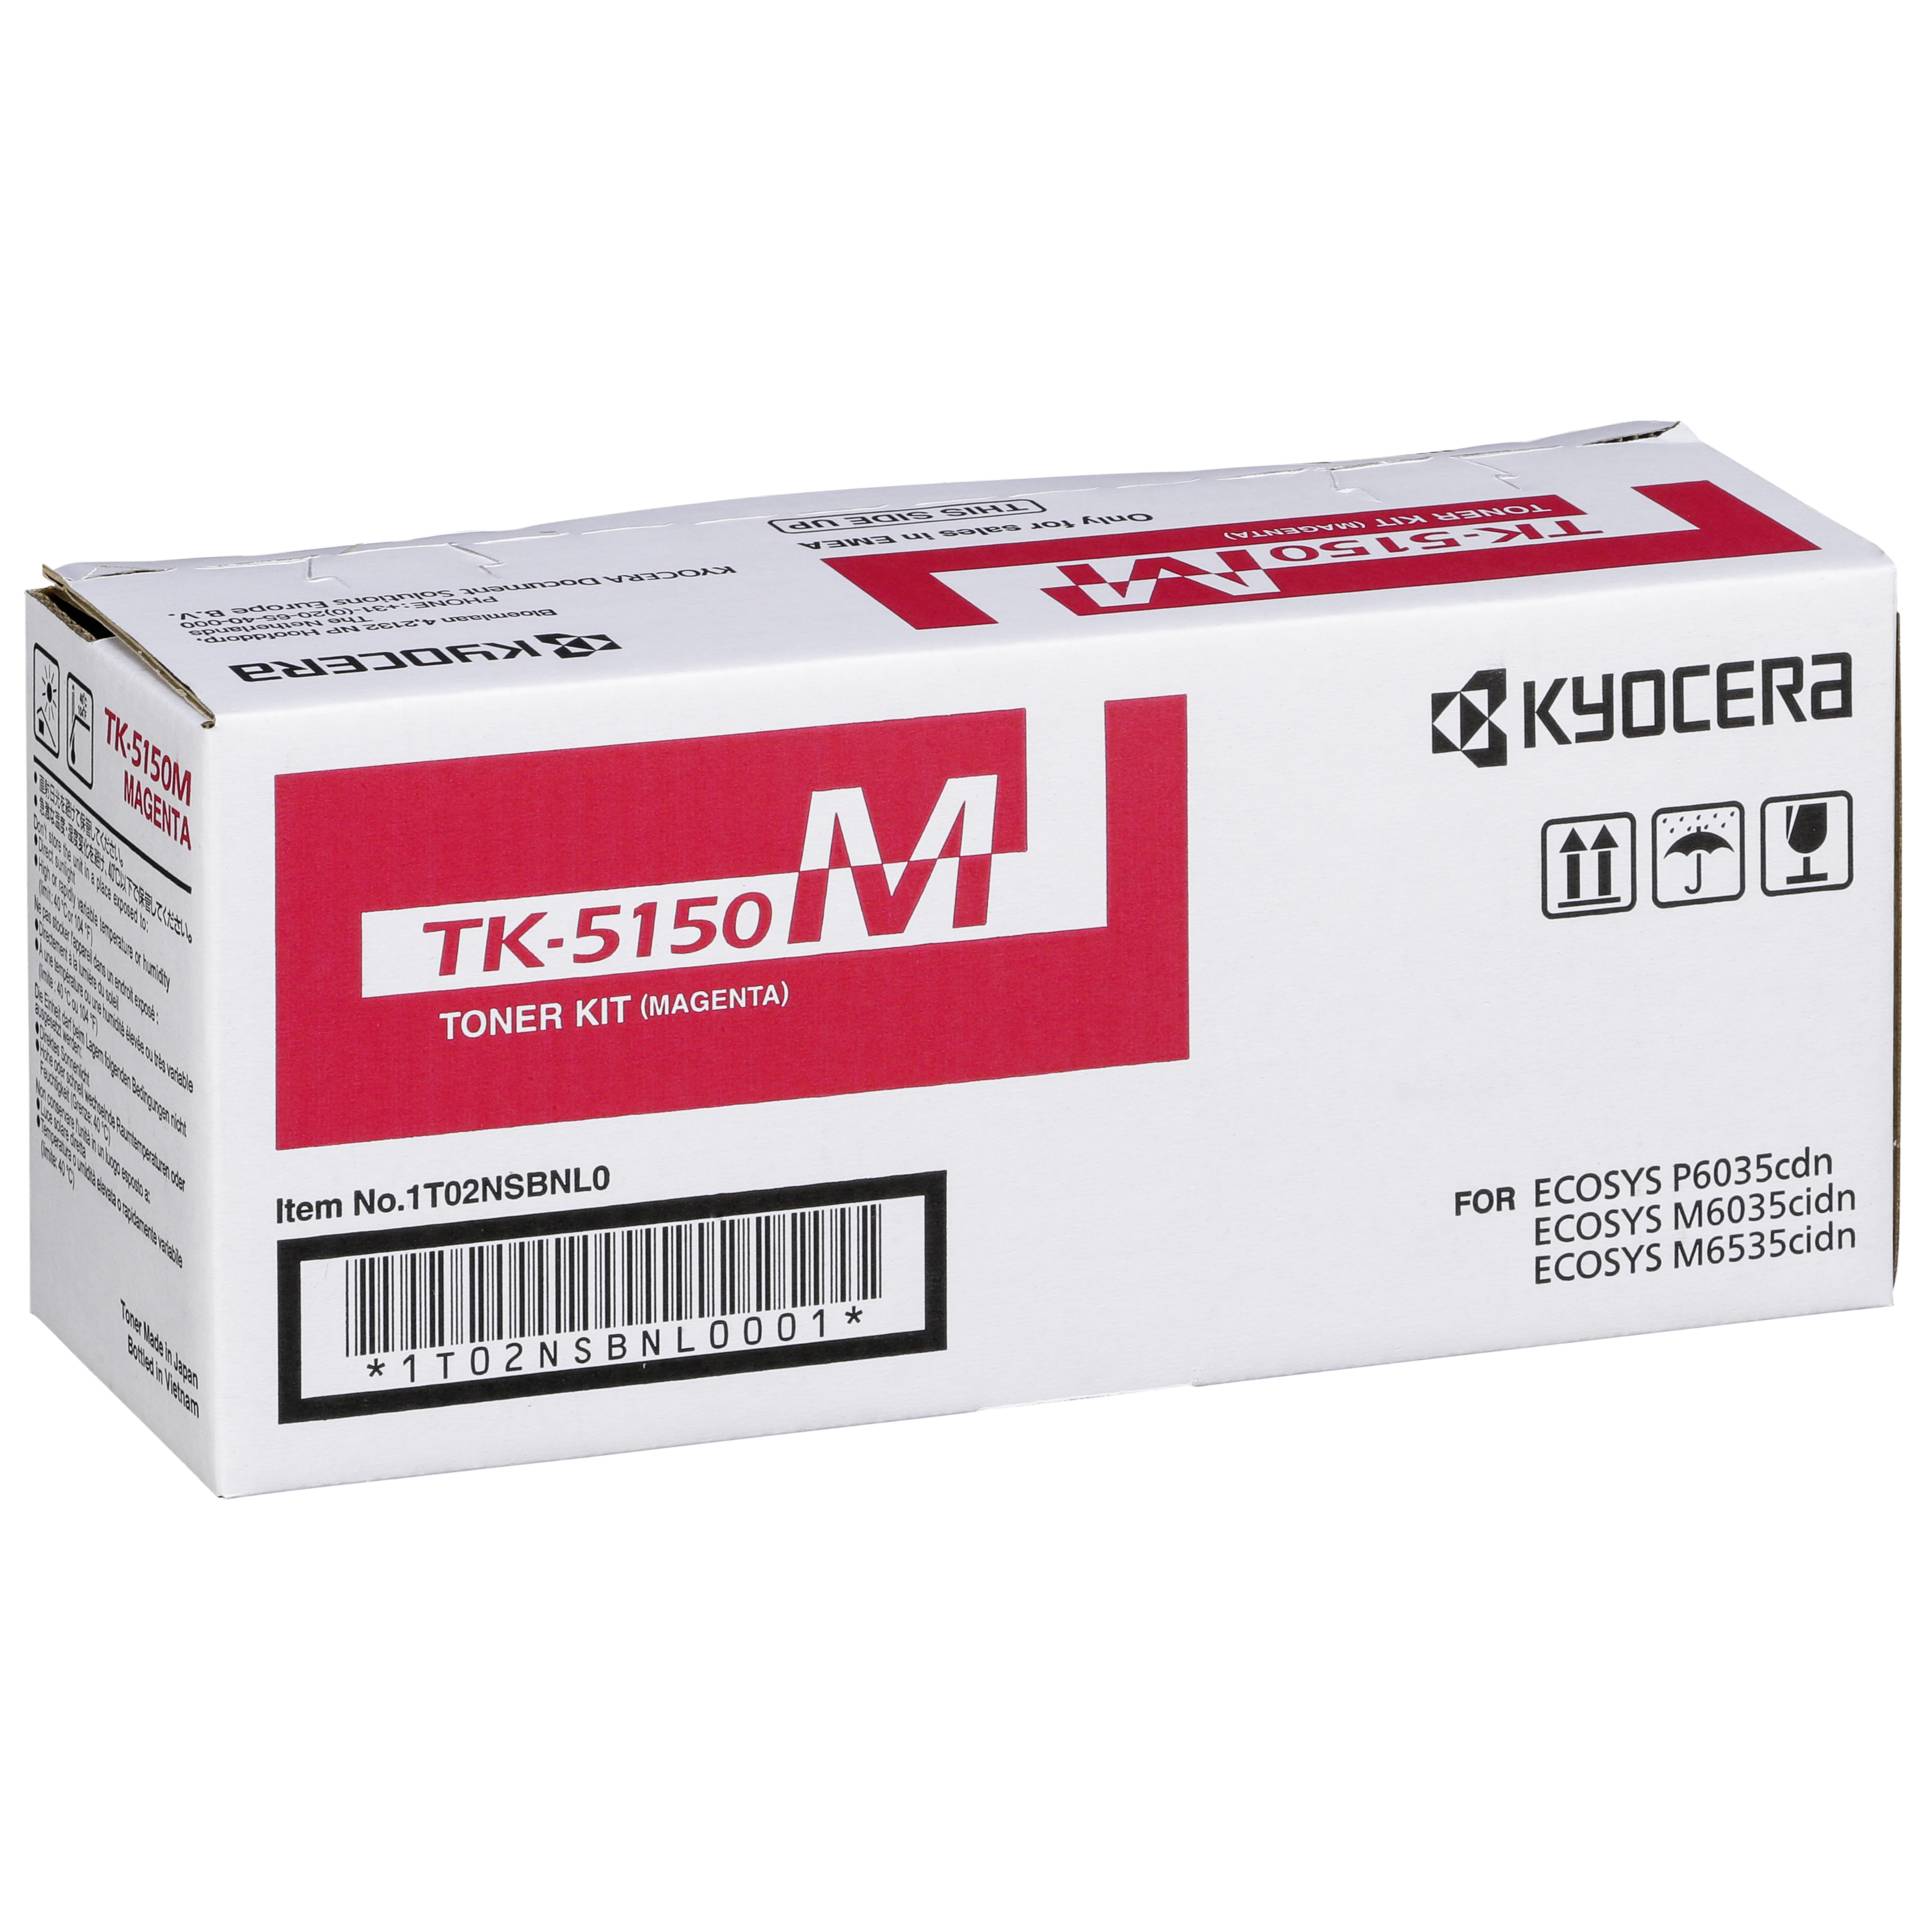 Kyocera Toner TK-5150 M magenta